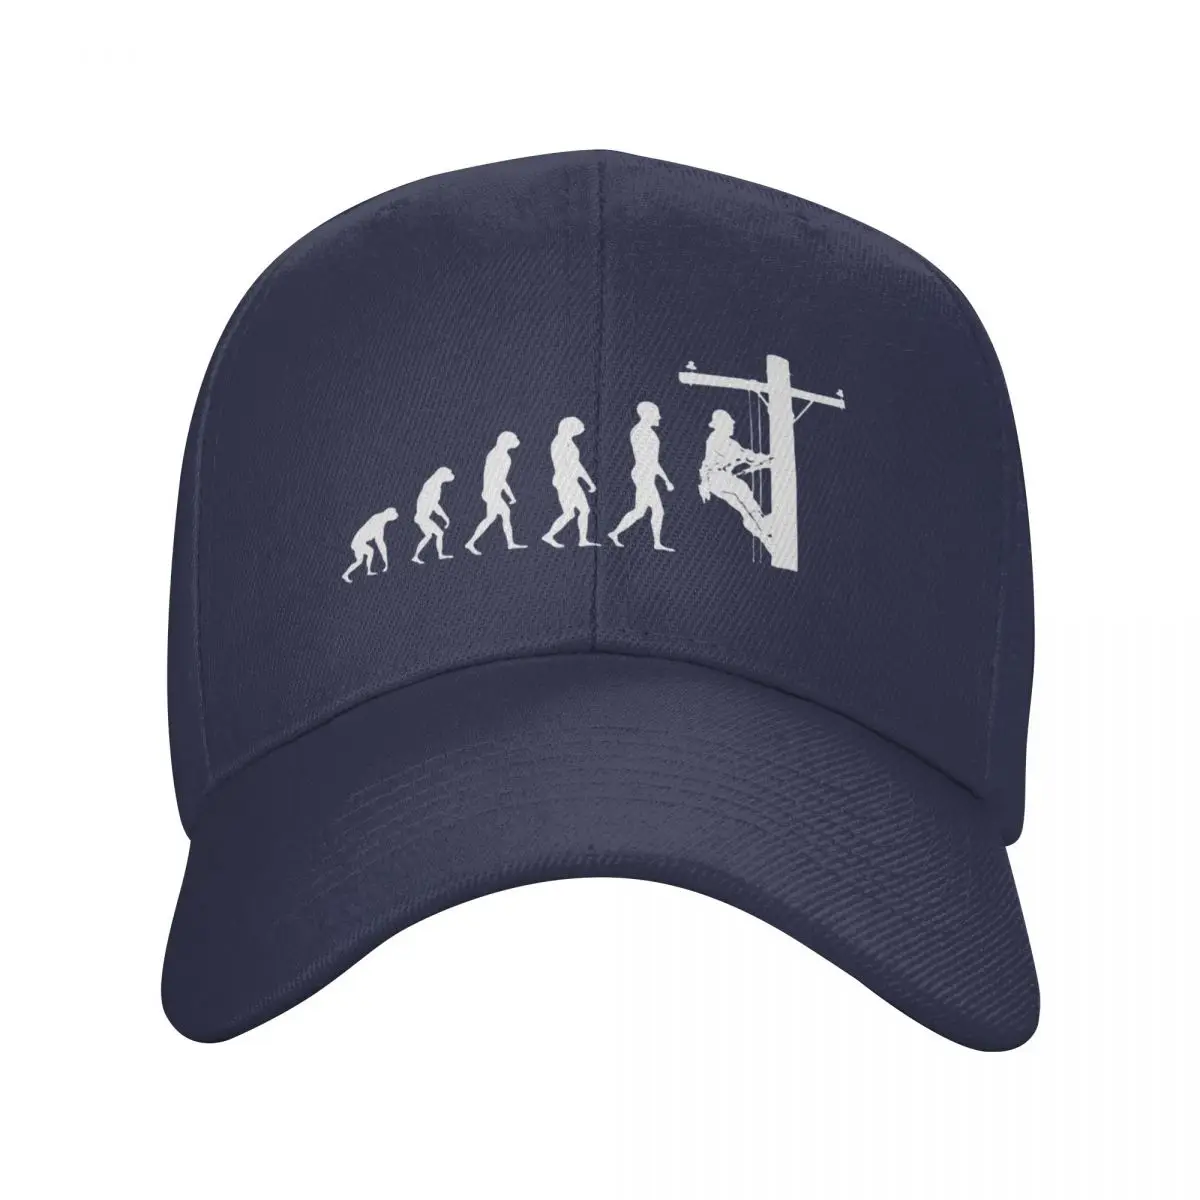 

Lineman Evolution Baseball Cap Men Women Adjustable Electrician Electrical Engineer Gift Dad Hat Outdoor Summer Hats